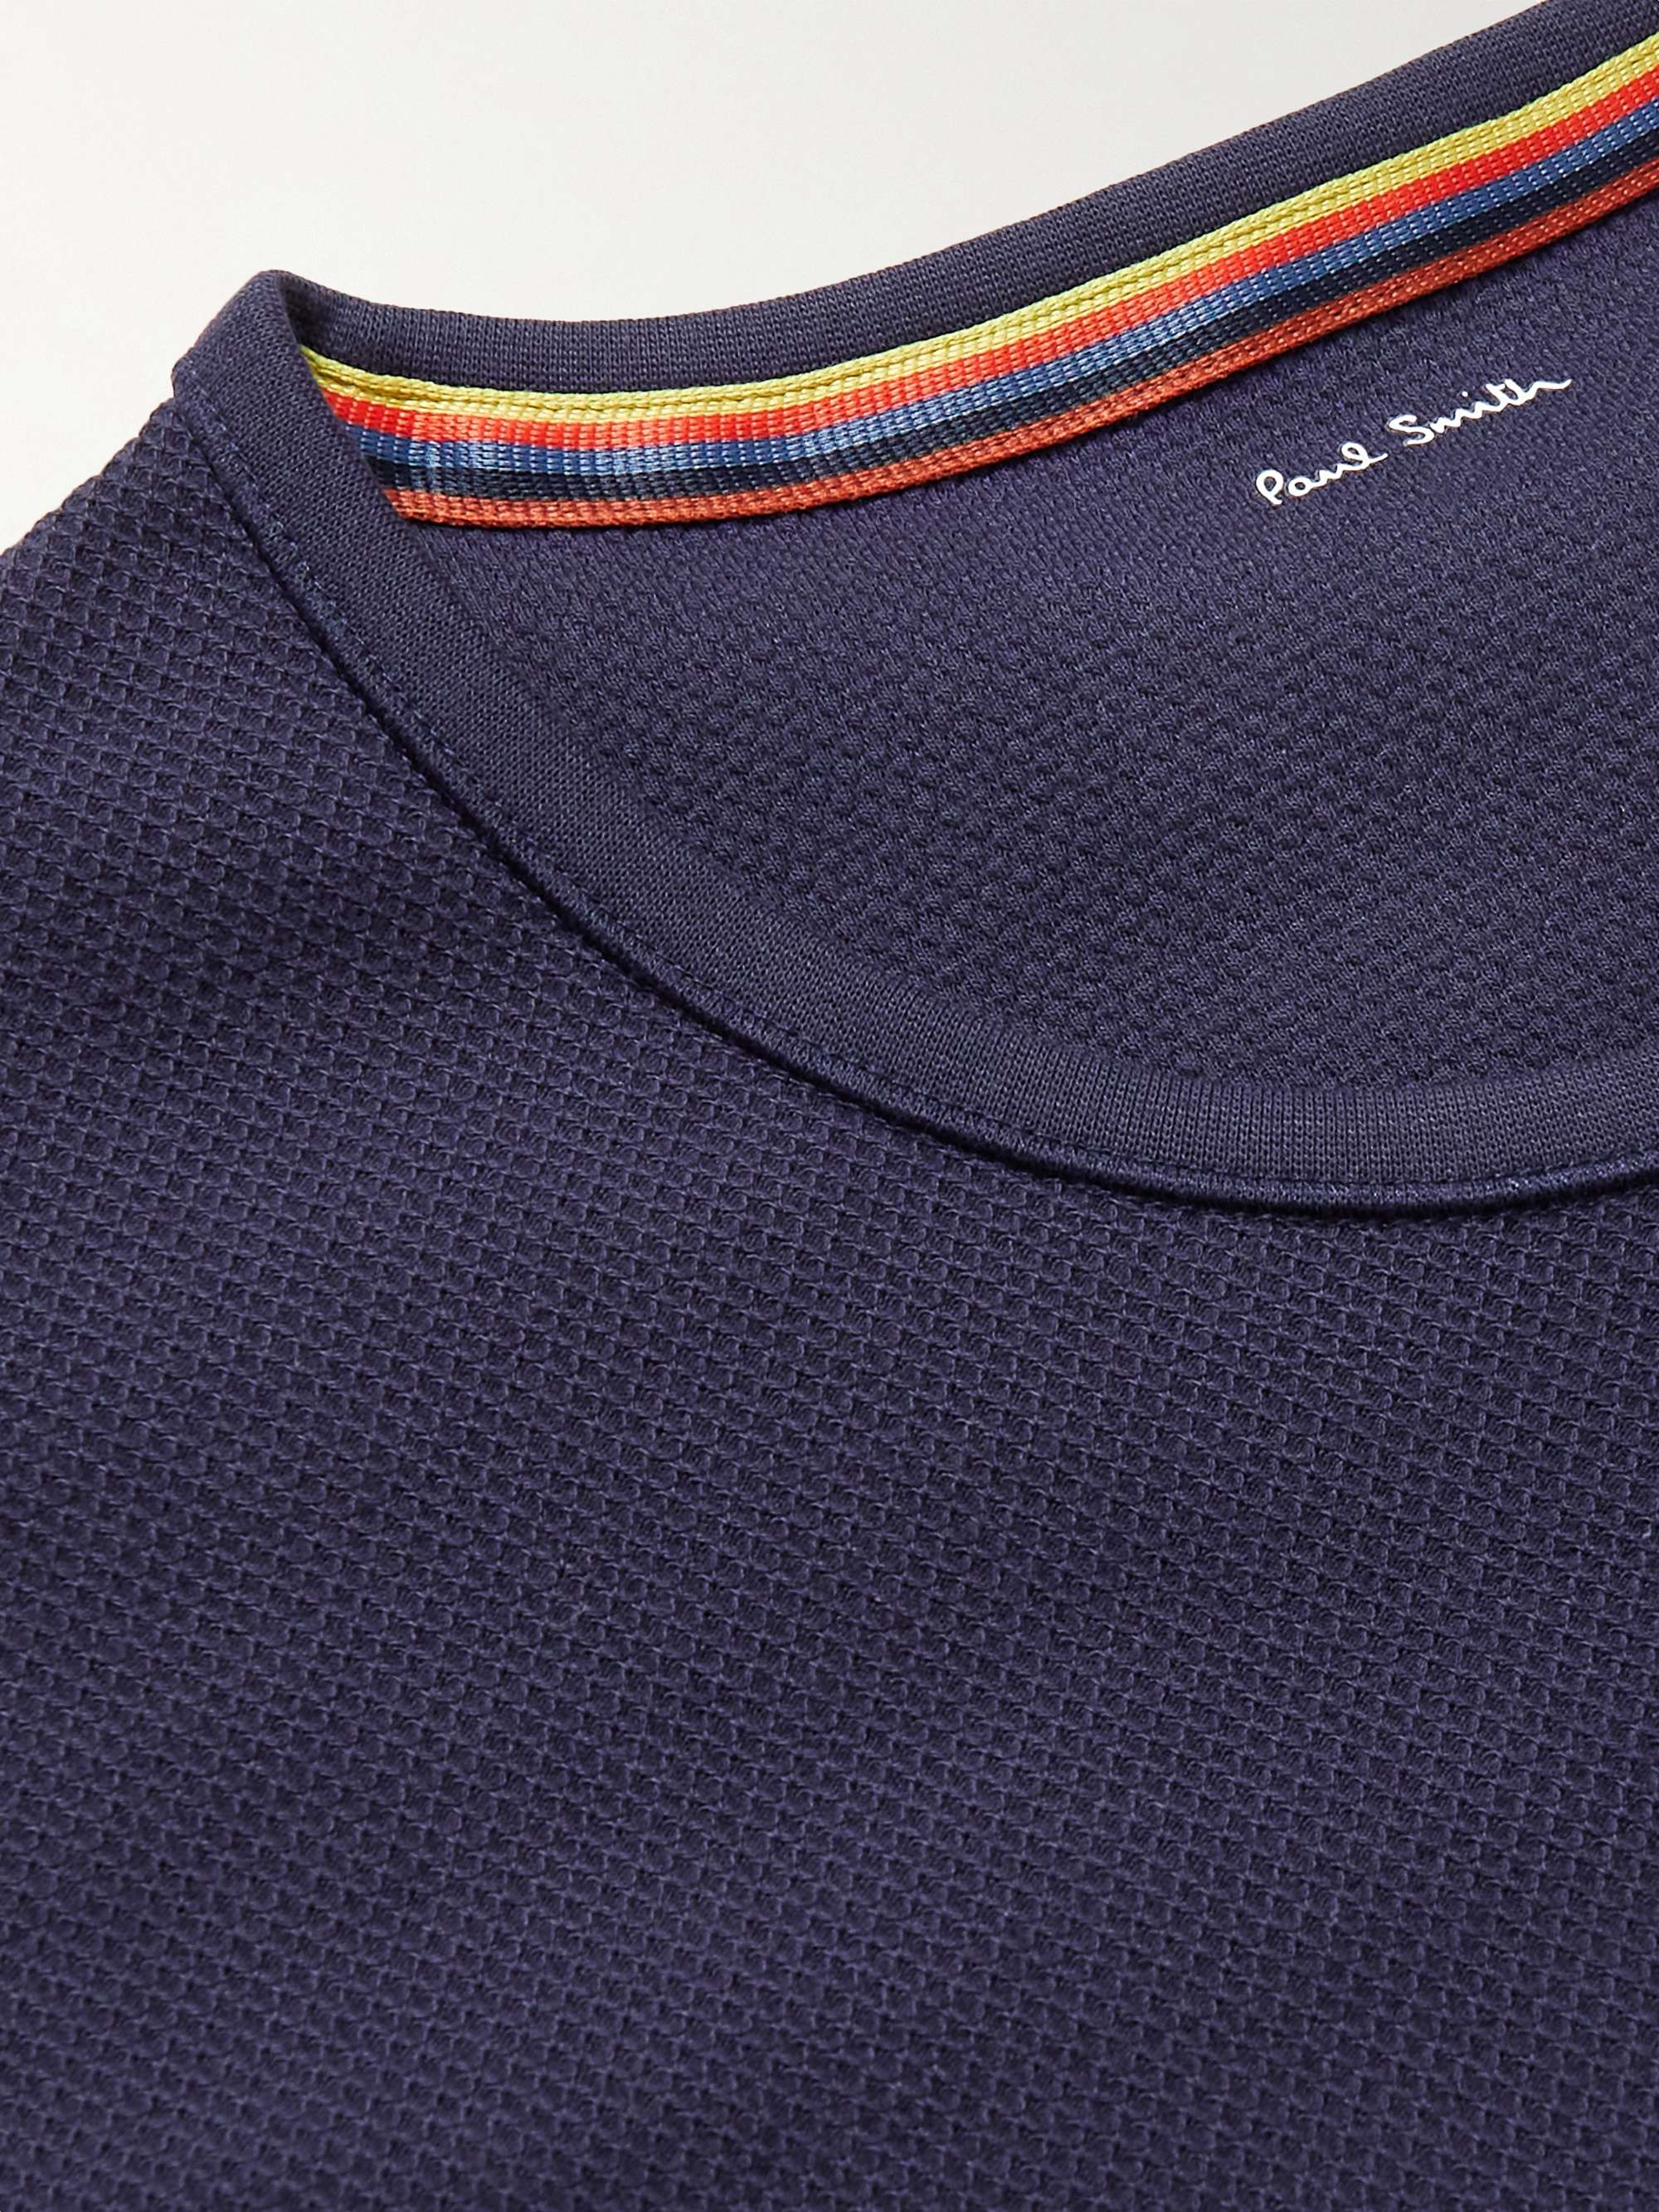 PAUL SMITH Slim-Fit Logo-Appliquéd Textured Cotton-Blend Jersey T-Shirt